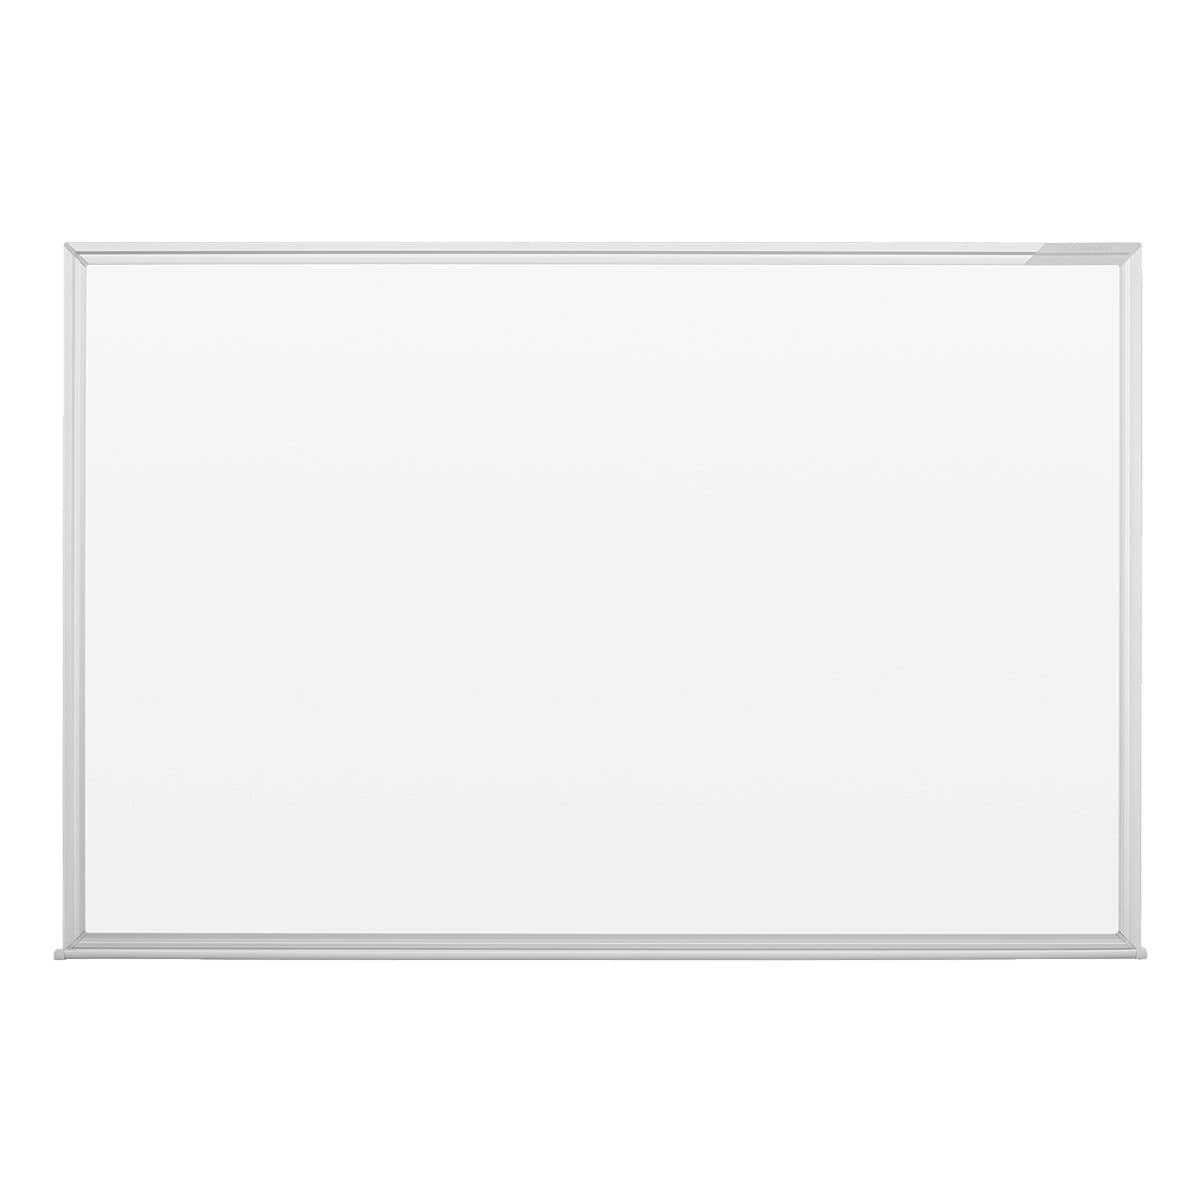 magnetoplan Whiteboard 1240388 lackiert, 90x60 cm